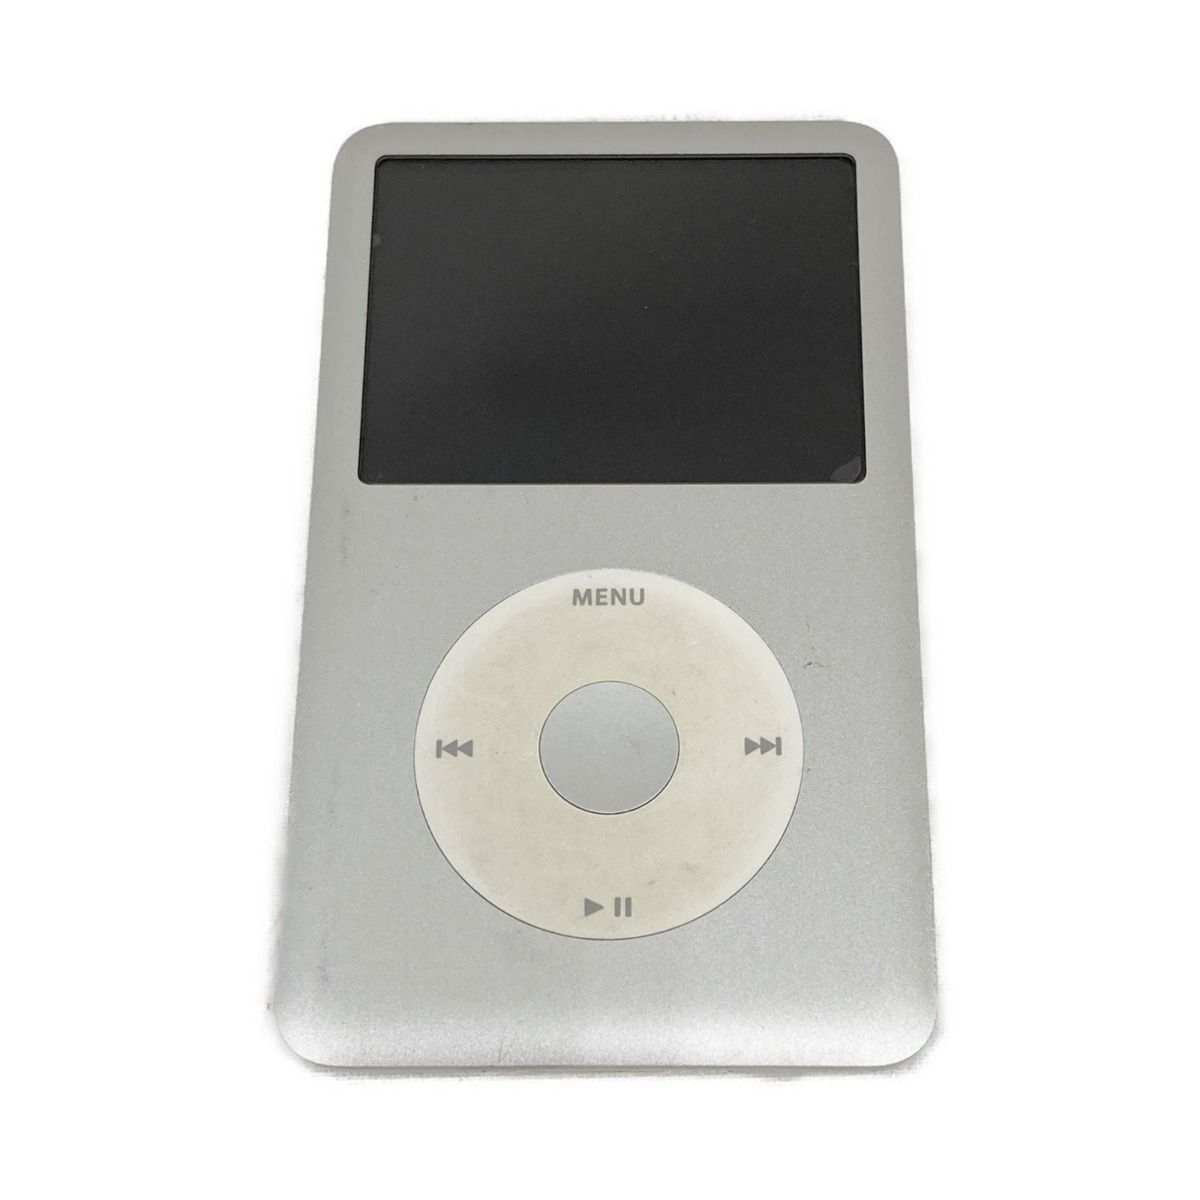 〇〇Apple アップル iPod classic 80GB デジタル オーディオプレーヤー